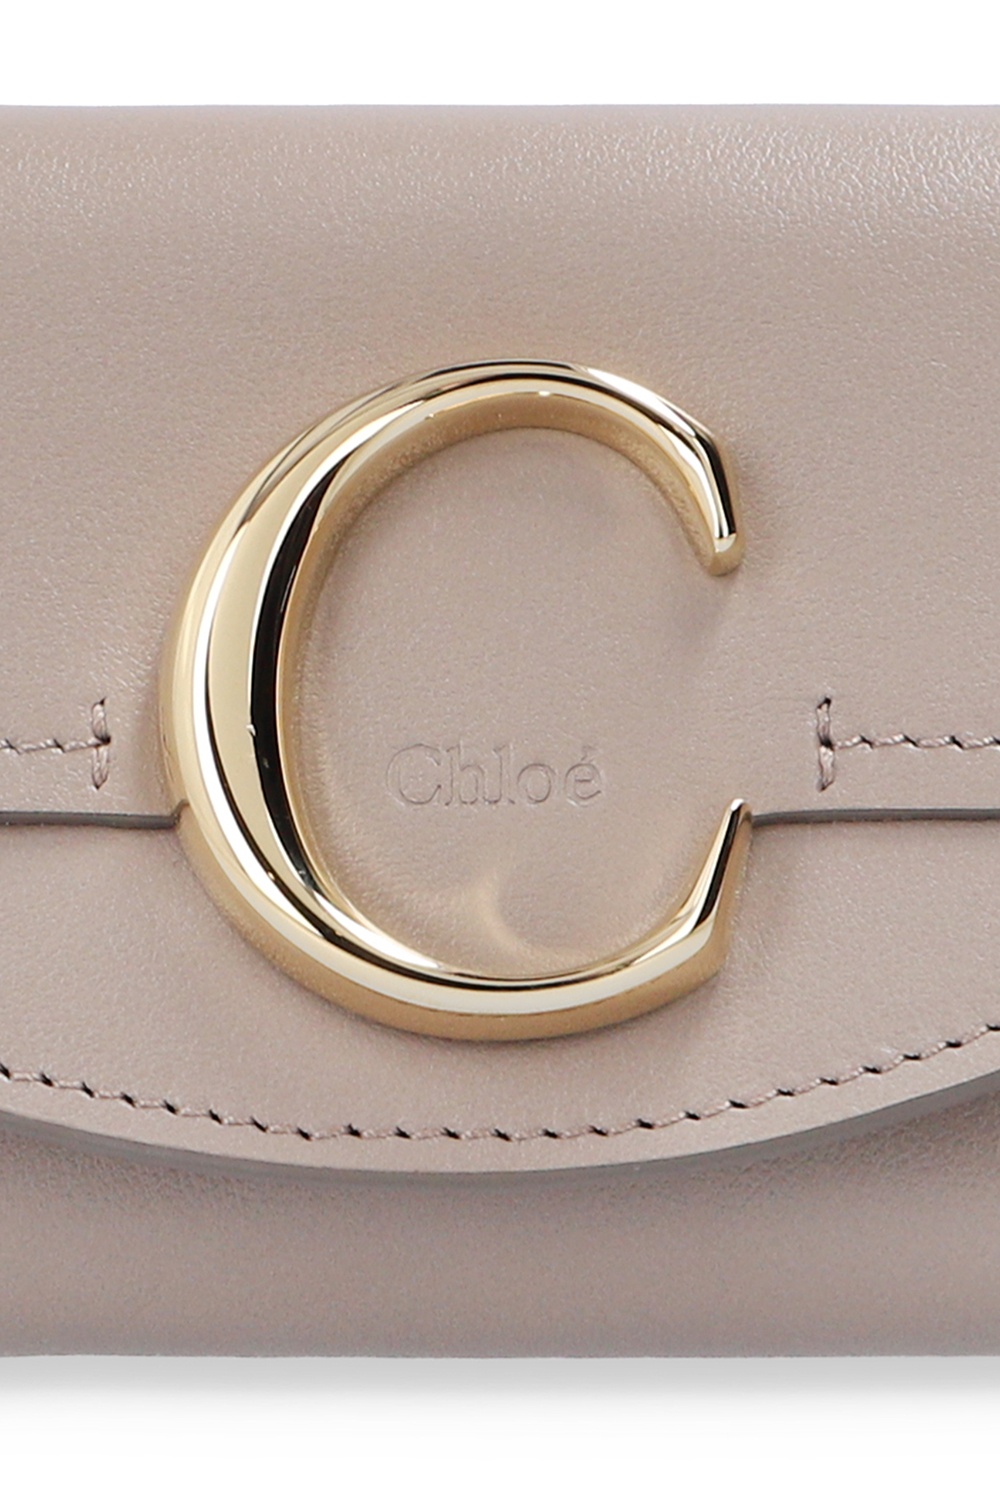 Chloé Chloe Classic Tee